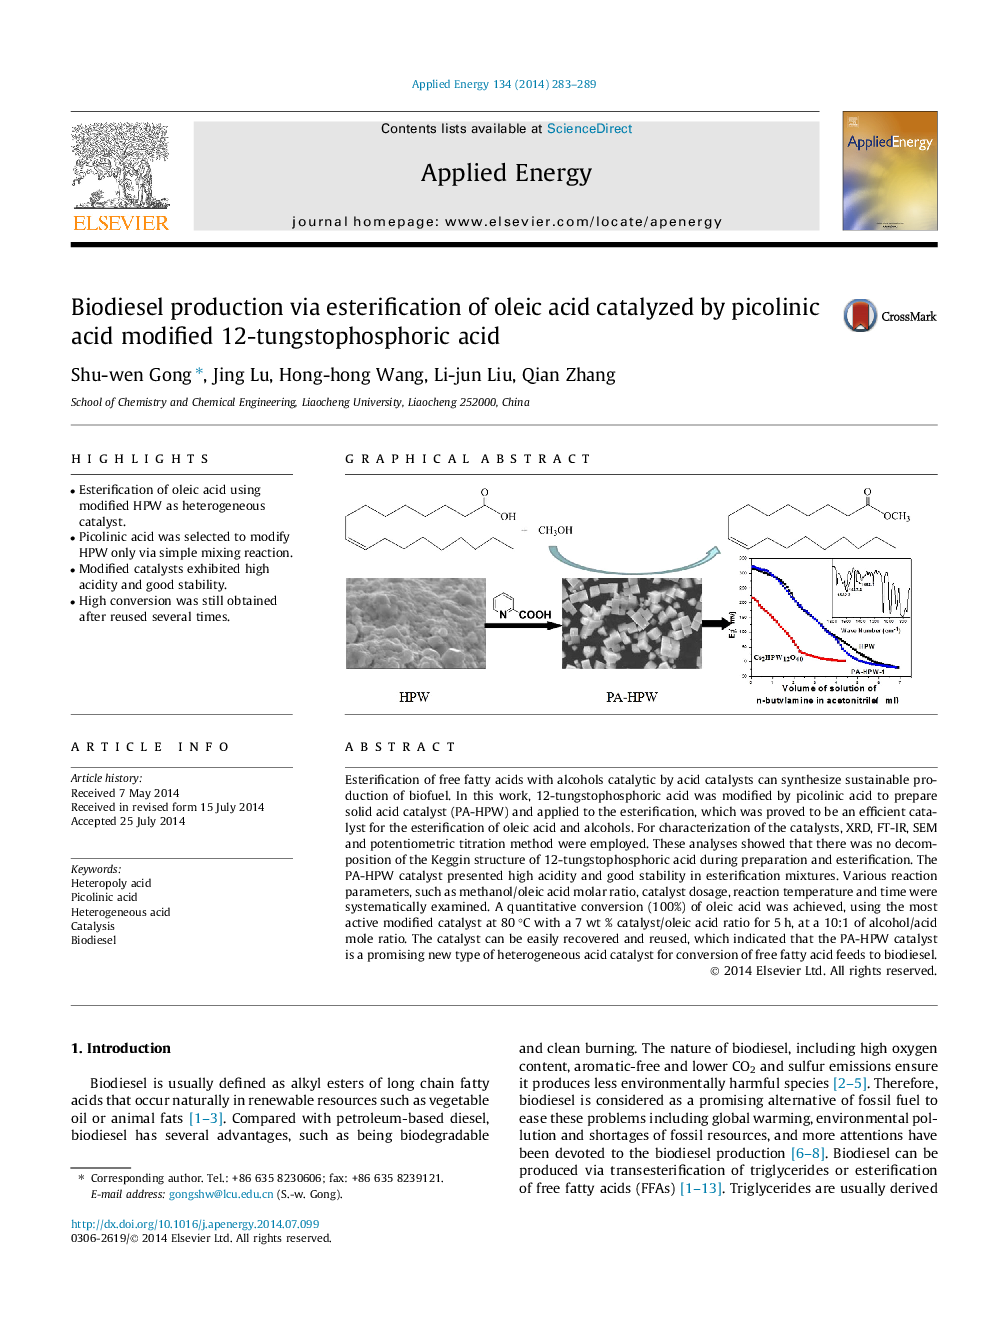 تولید بیودیزل از طریق استرینگ سازی اسید اولئیک کاتالیز شده با اسید پیکولینی اسید 12 تنگستوفسفریک اسید 